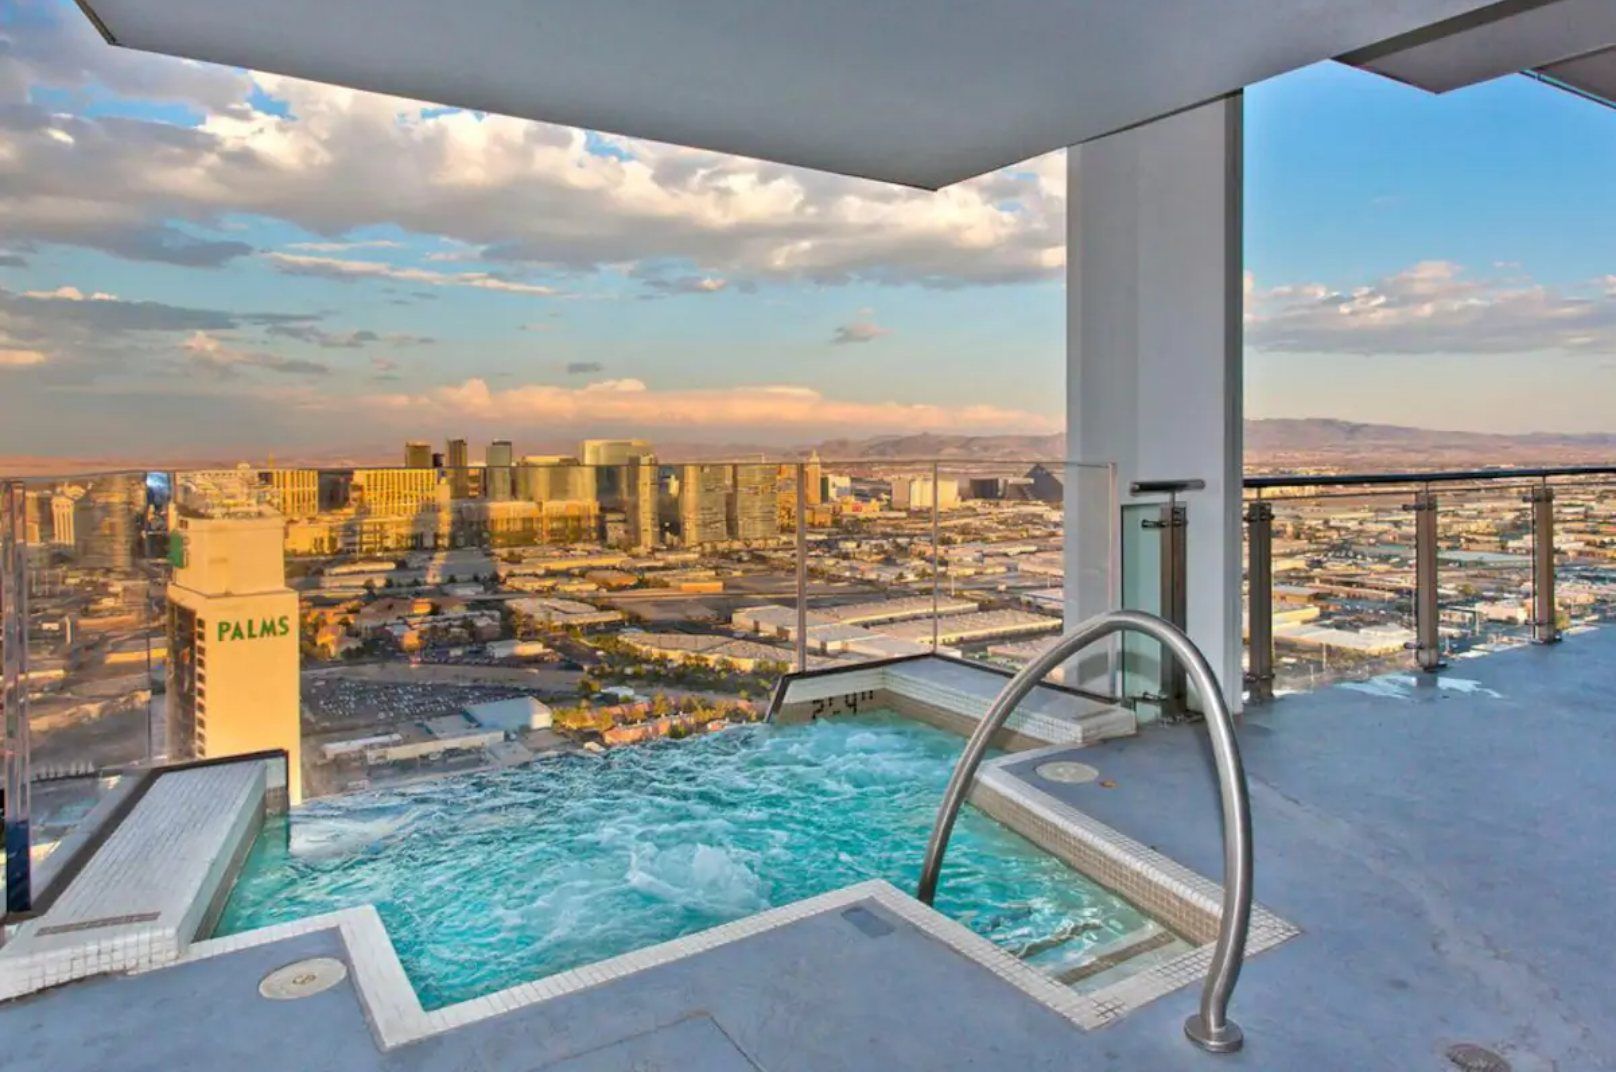 the best Airbnbs in Las Vegas